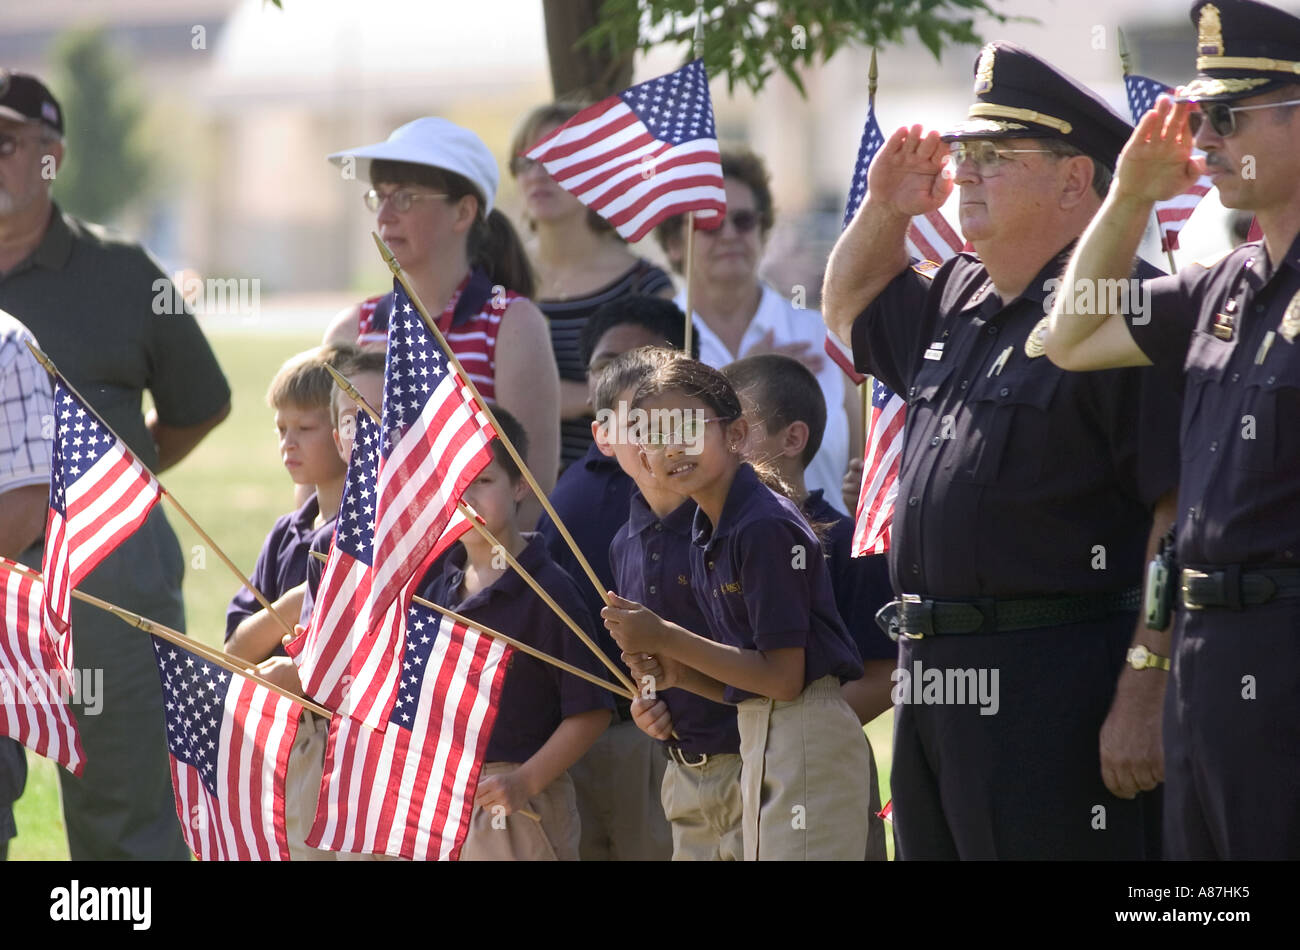 Les enfants de l'école américaine et de police au cours d'une cérémonie du jour du Souvenir en rendant hommage à ceux qui sont morts dans la lutte contre les guerres. USA Banque D'Images